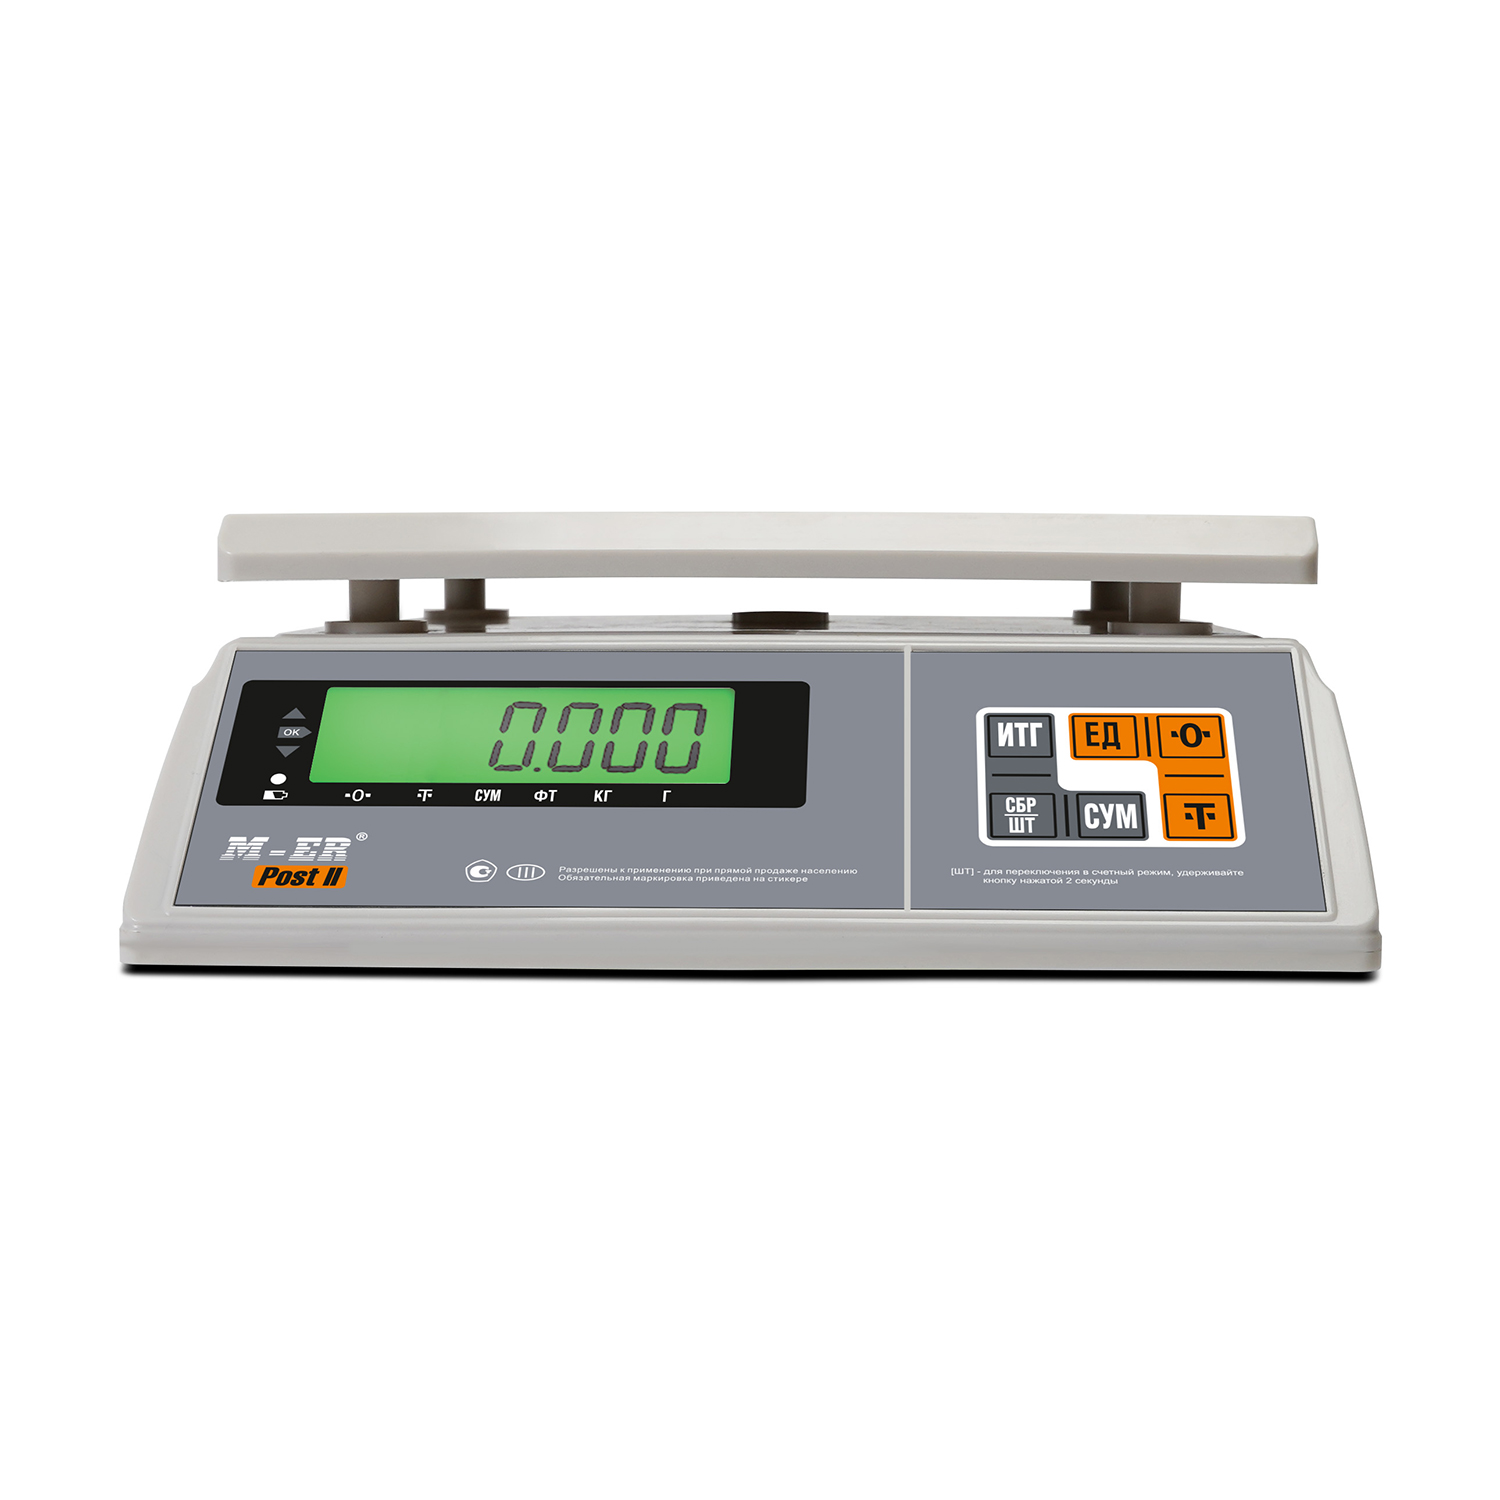 Порционные весы M-ER 326 AFU-6.01 "Post II" LCD (3059)